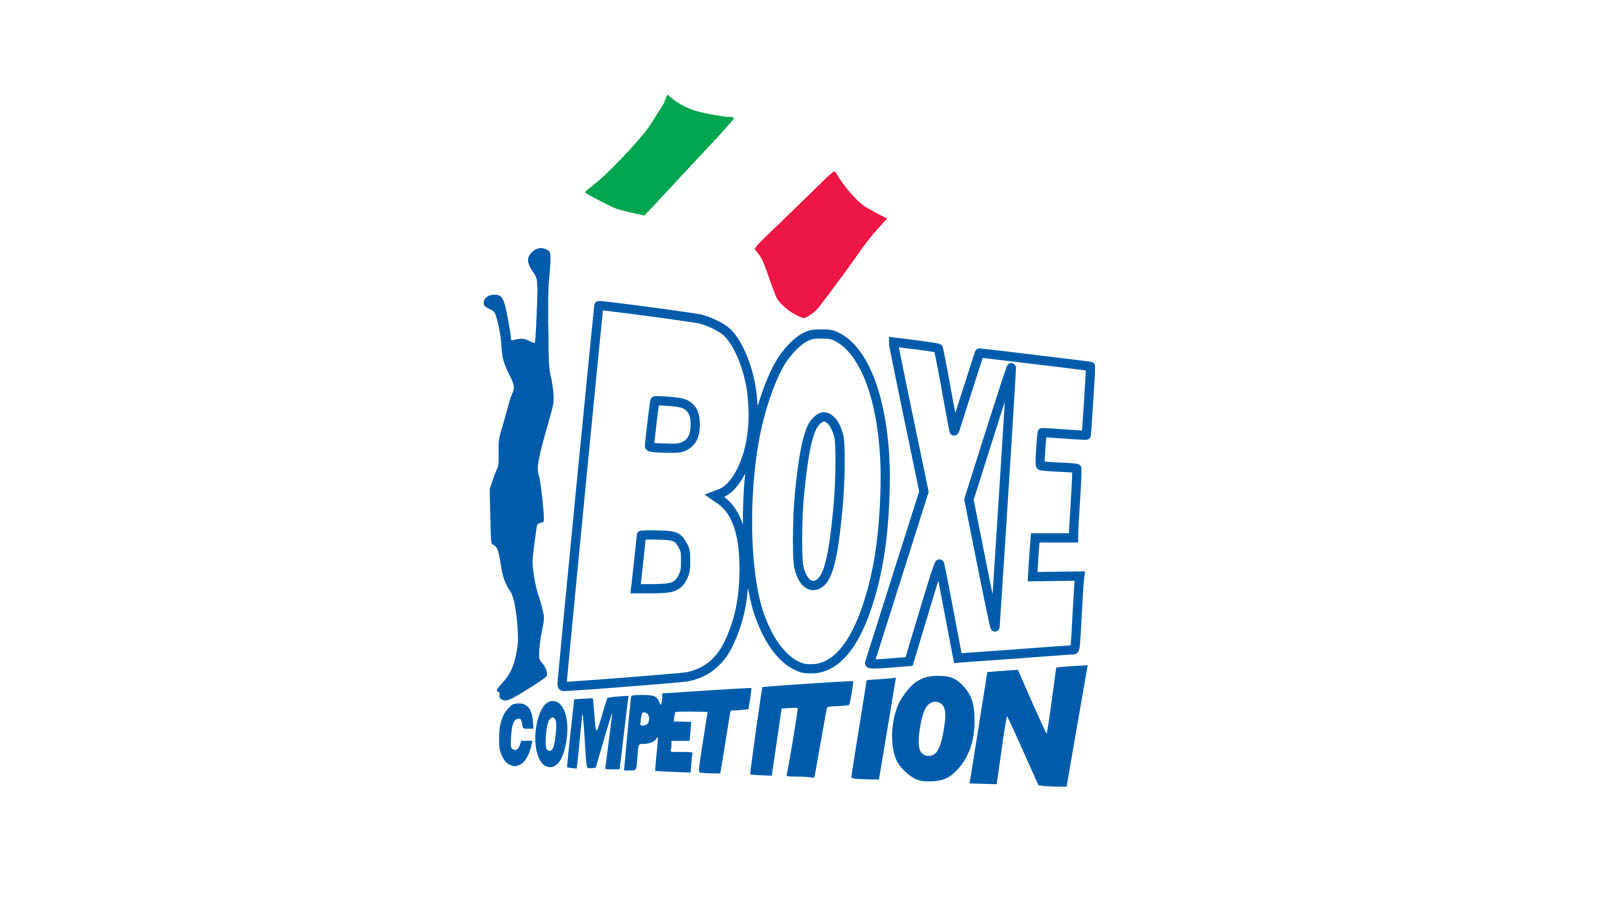 #PrePugilistica: Aperte le Iscrizioni per il VI Corso Istruttori Boxe Competition - Roma Maggio/Giugno 2015